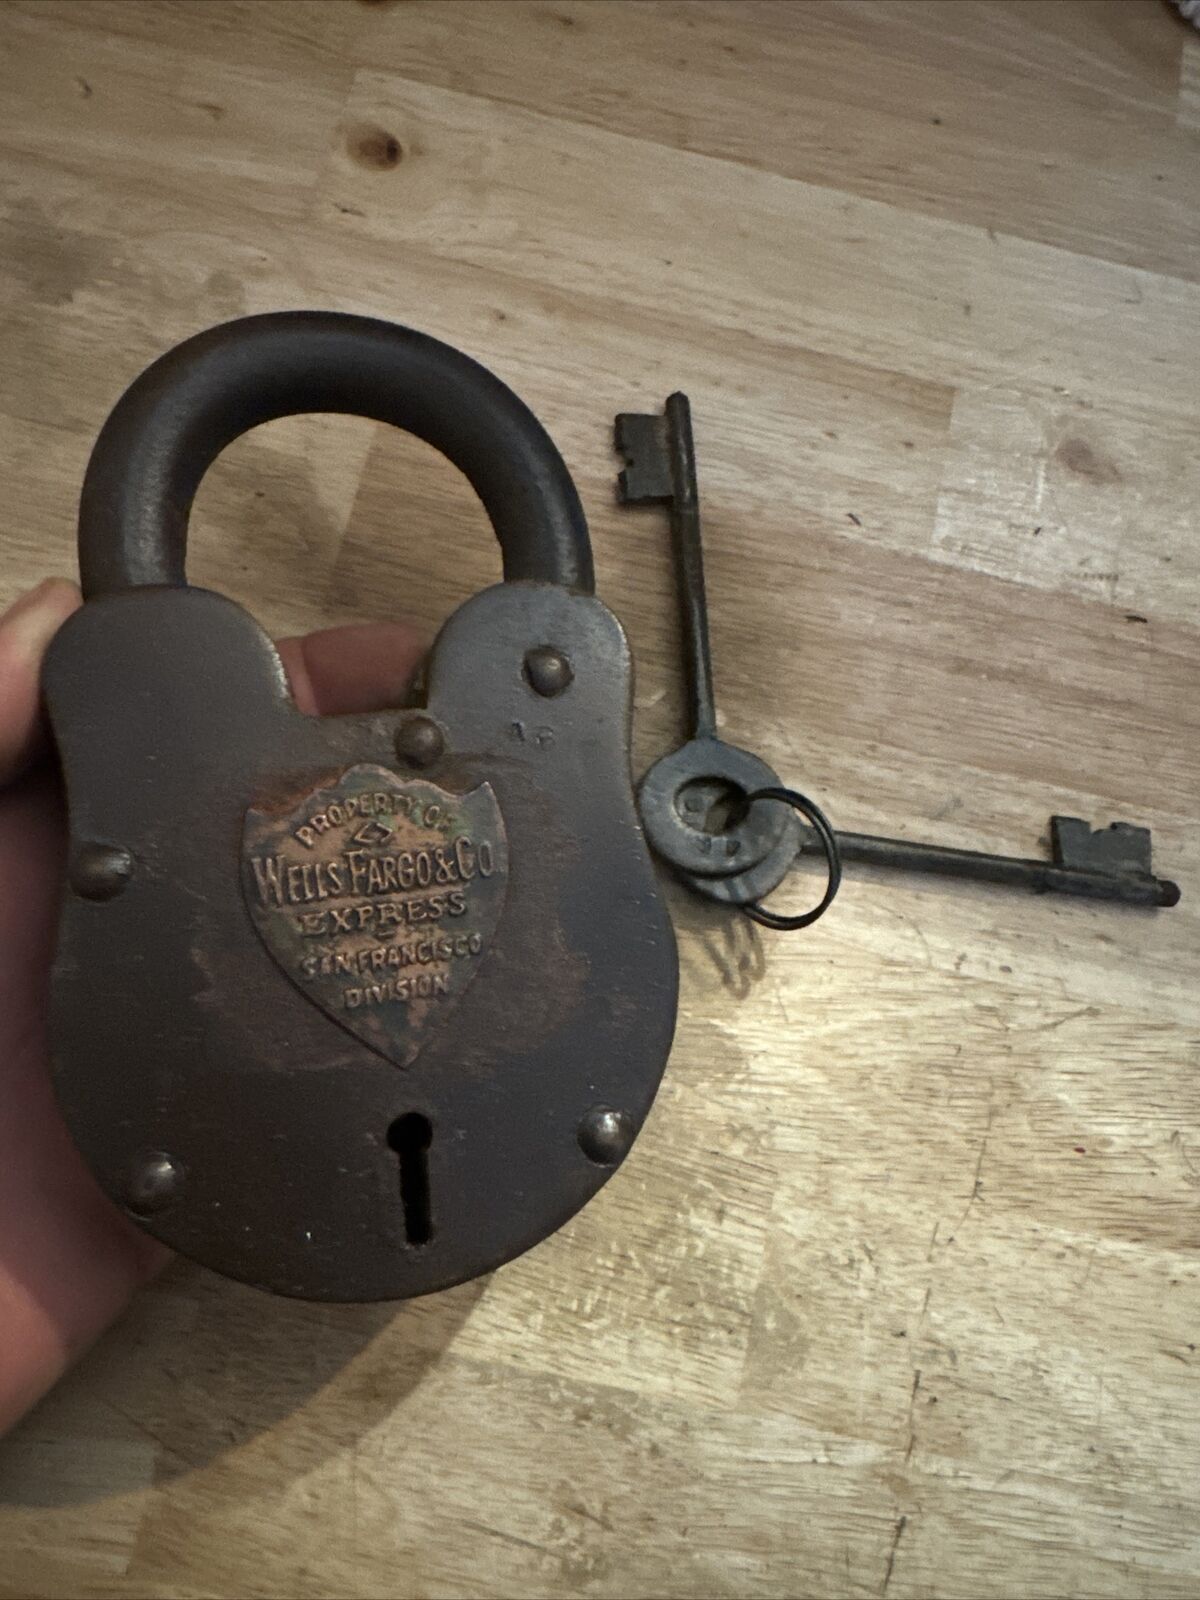 Wells Fargo Padlock Blacksmith Gunsmith Lock Keys Set Lot Patina Collector 2+LBS